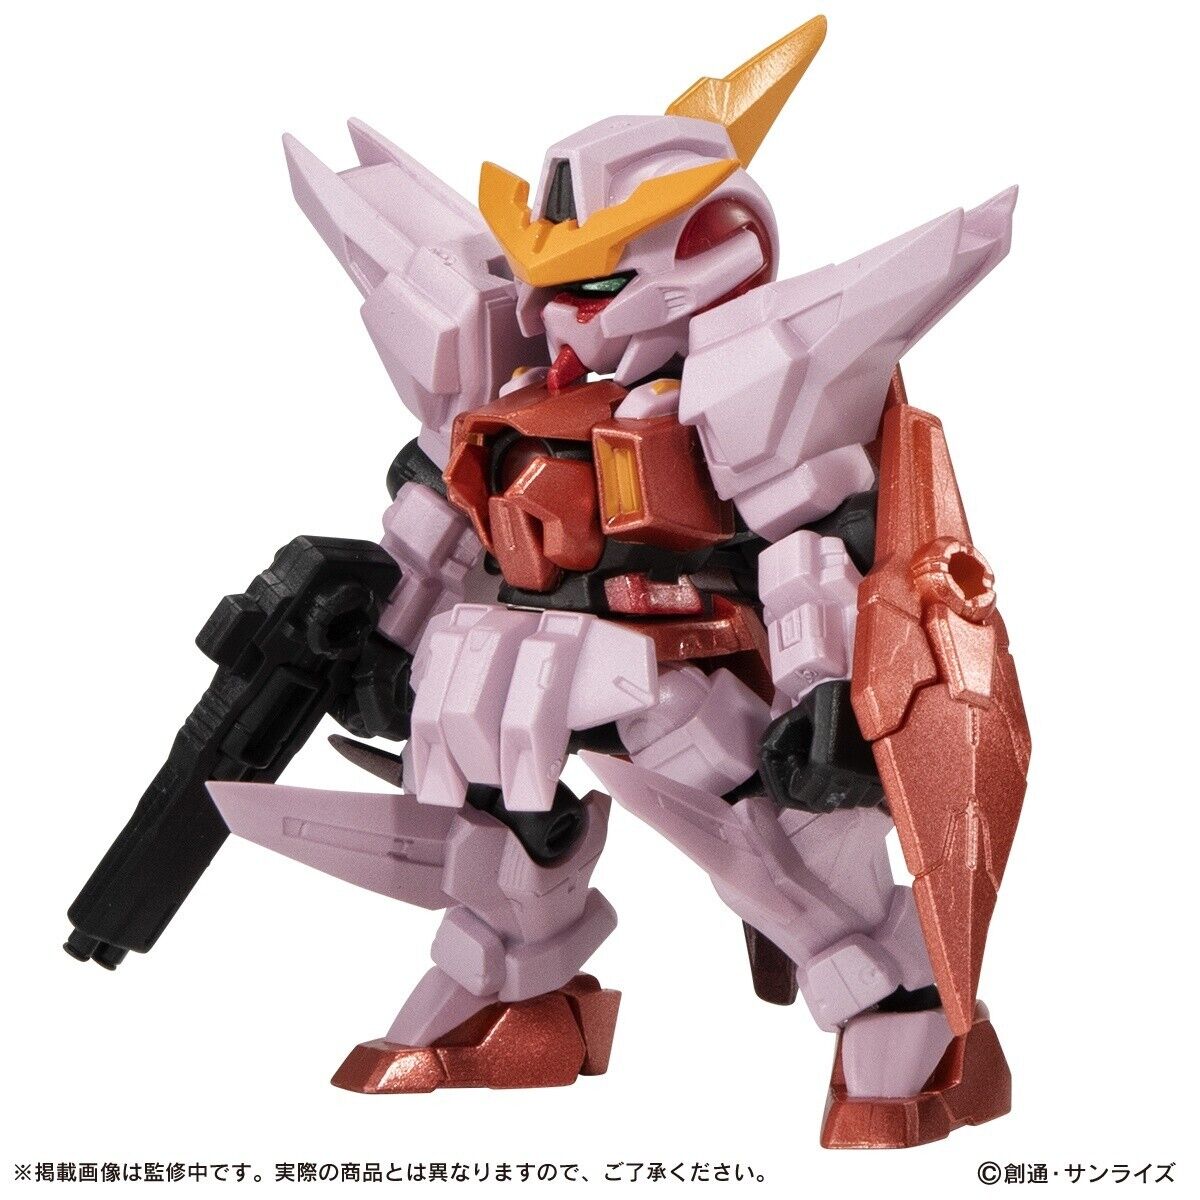 Bandai Mobile Suit Ensemble 16.5 (Gundam Kyrios) Trans-Am Color